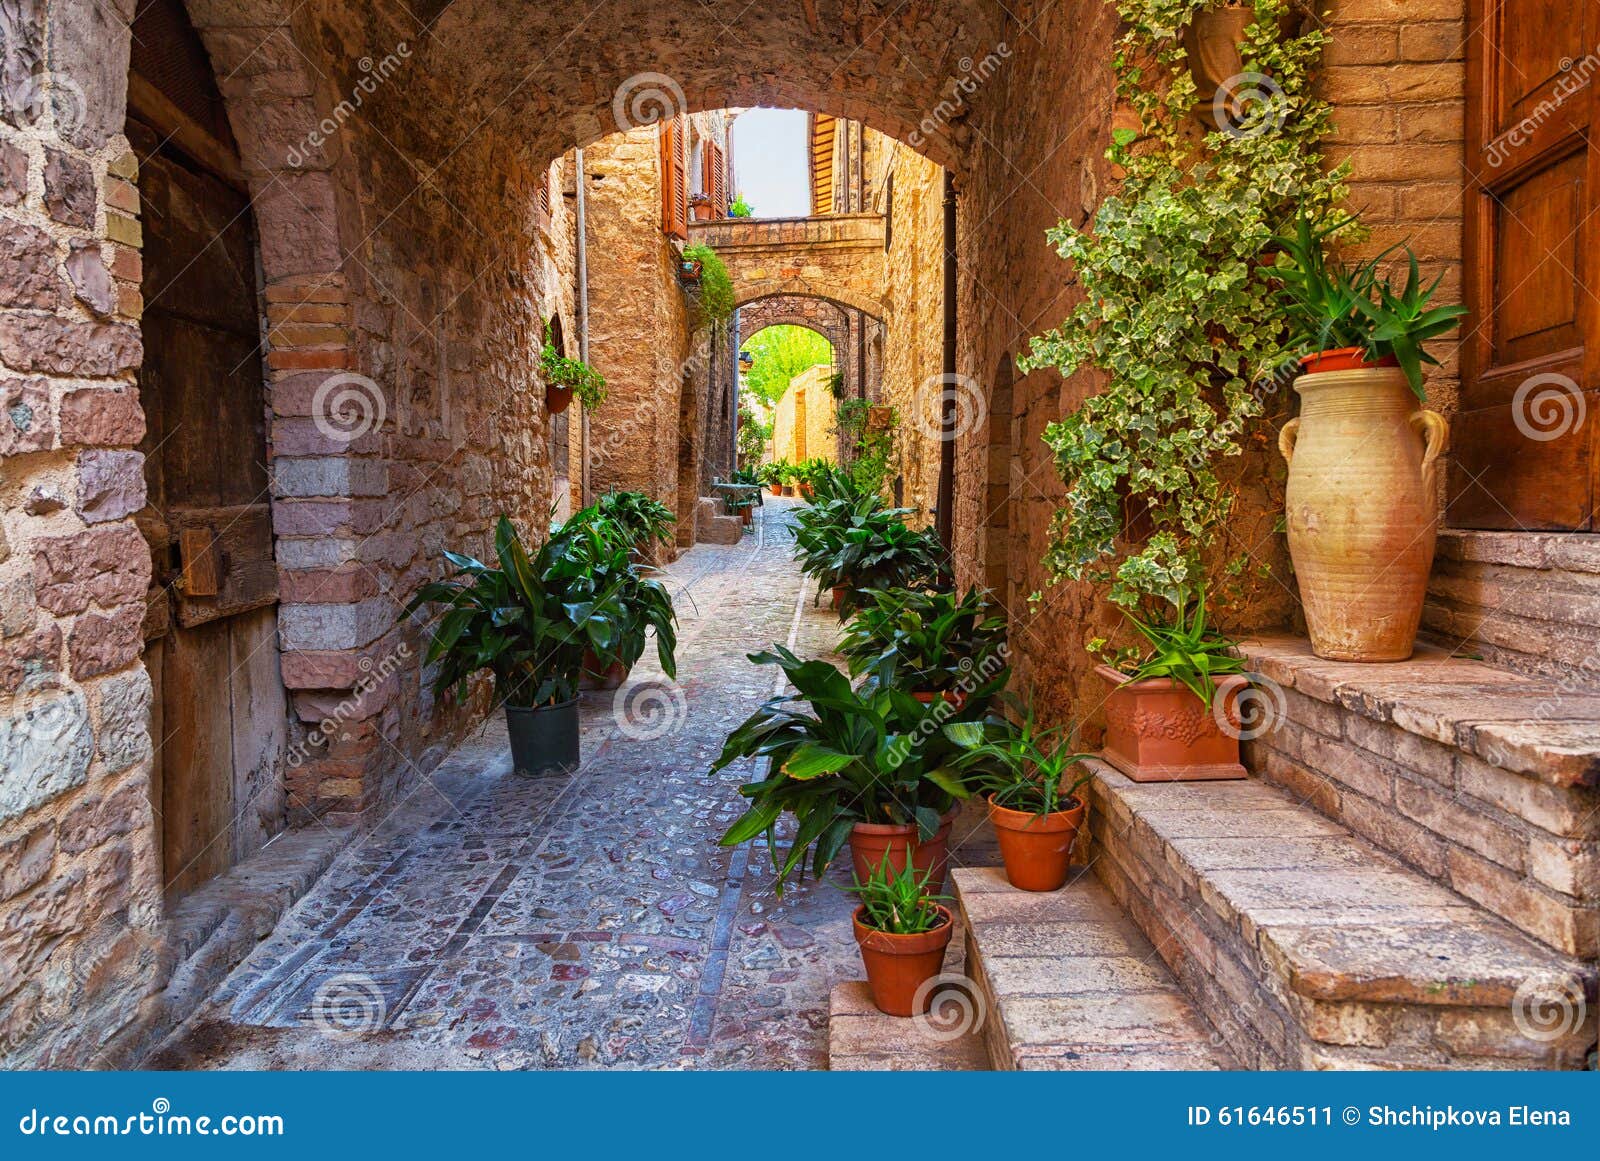 Spello, Umbrië, Italië stock afbeelding. Image of cultuur - 61646511